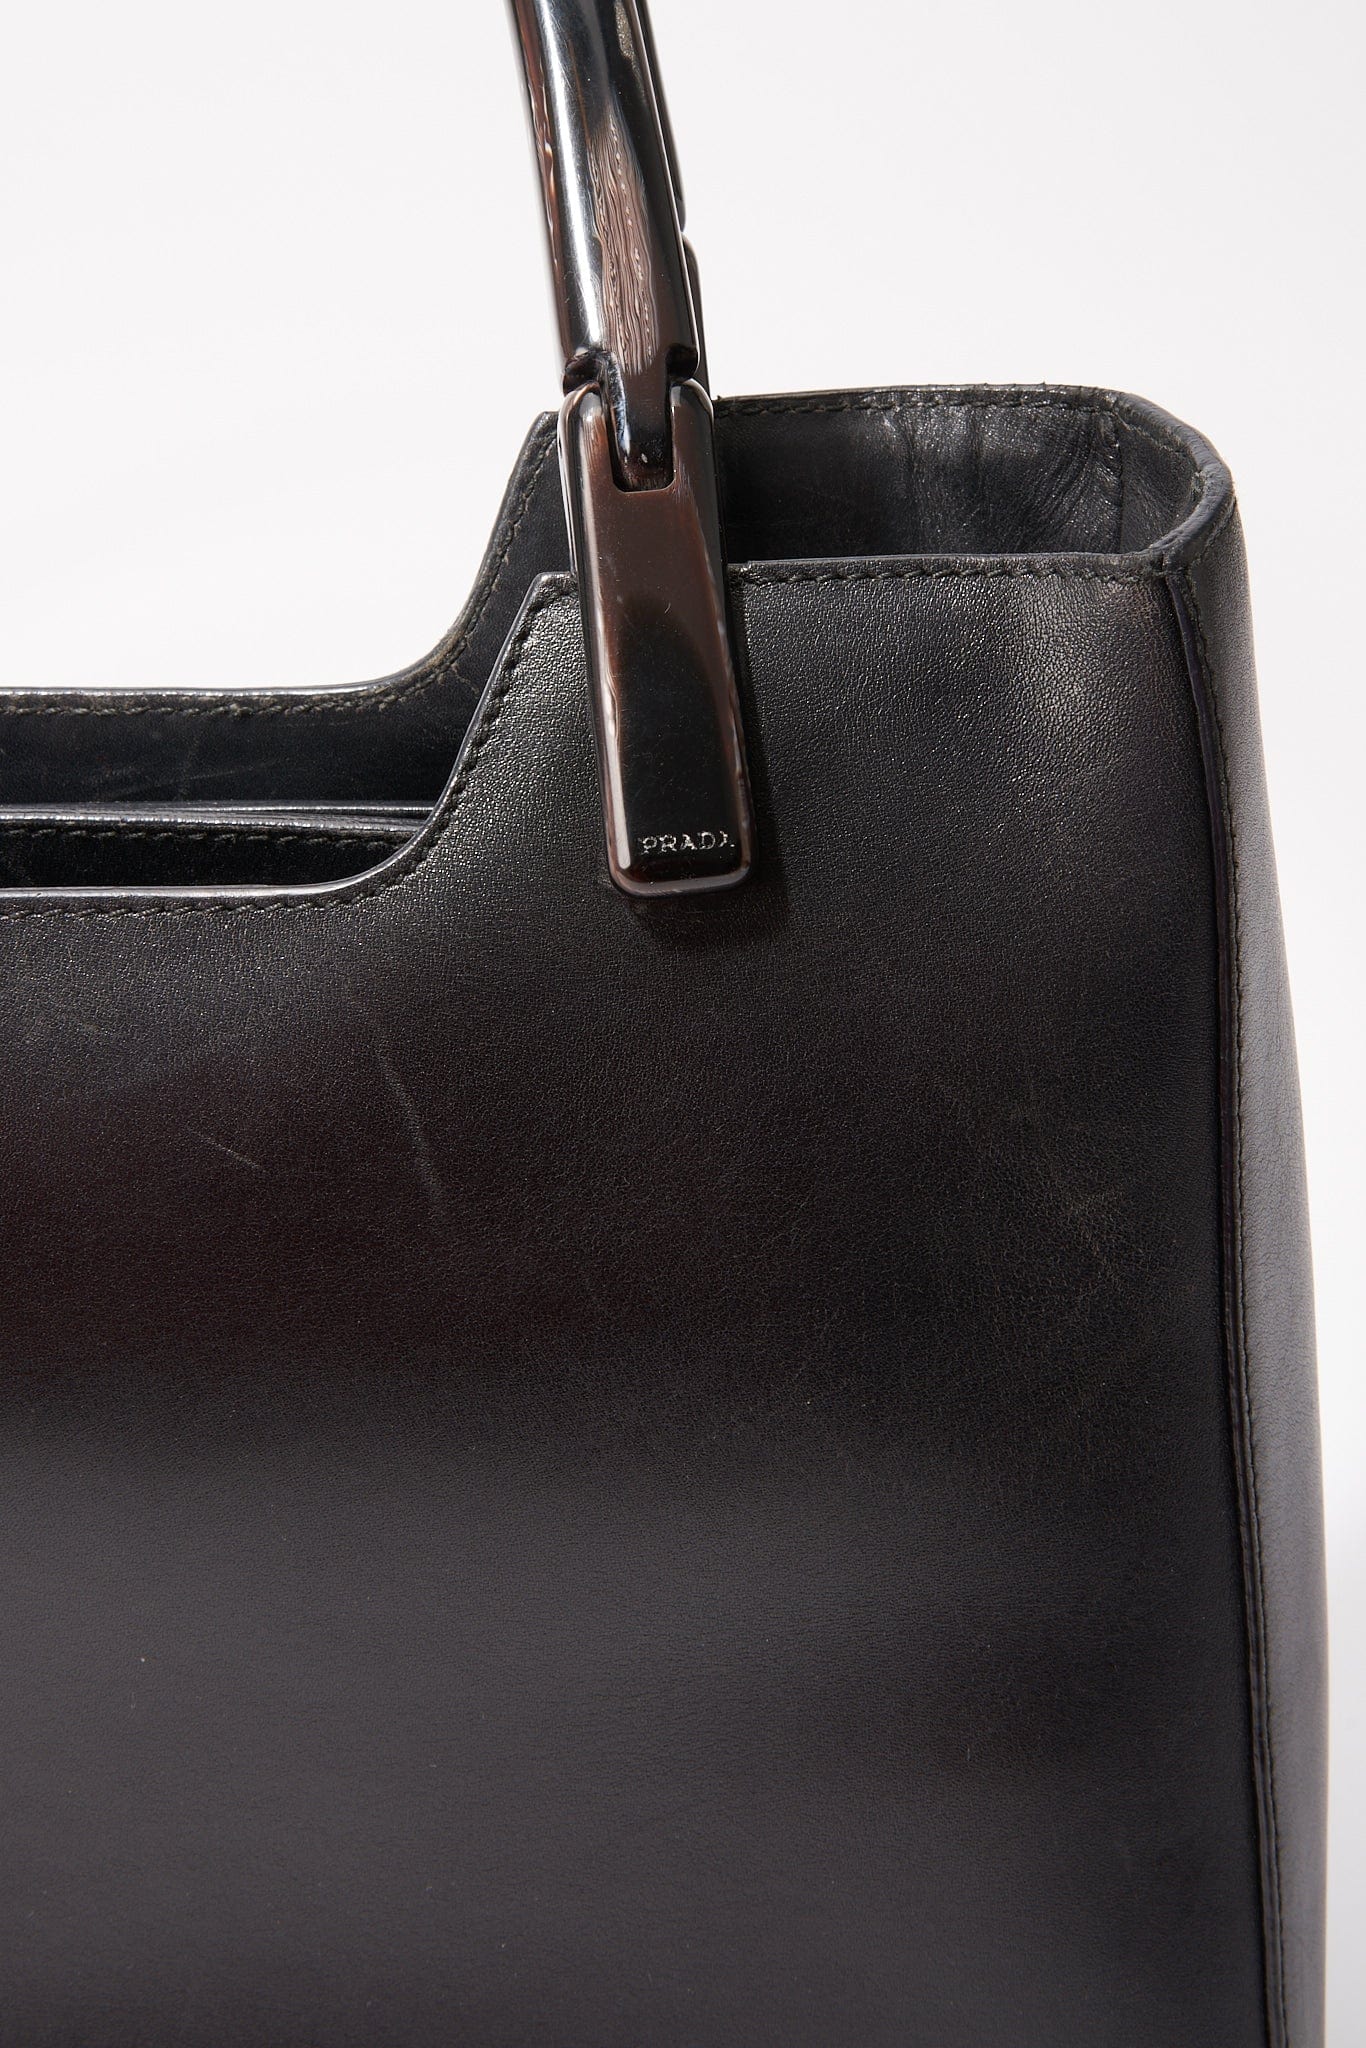 A vintage 90's Prada Black Leather Shoulder Bag with Resin Handles